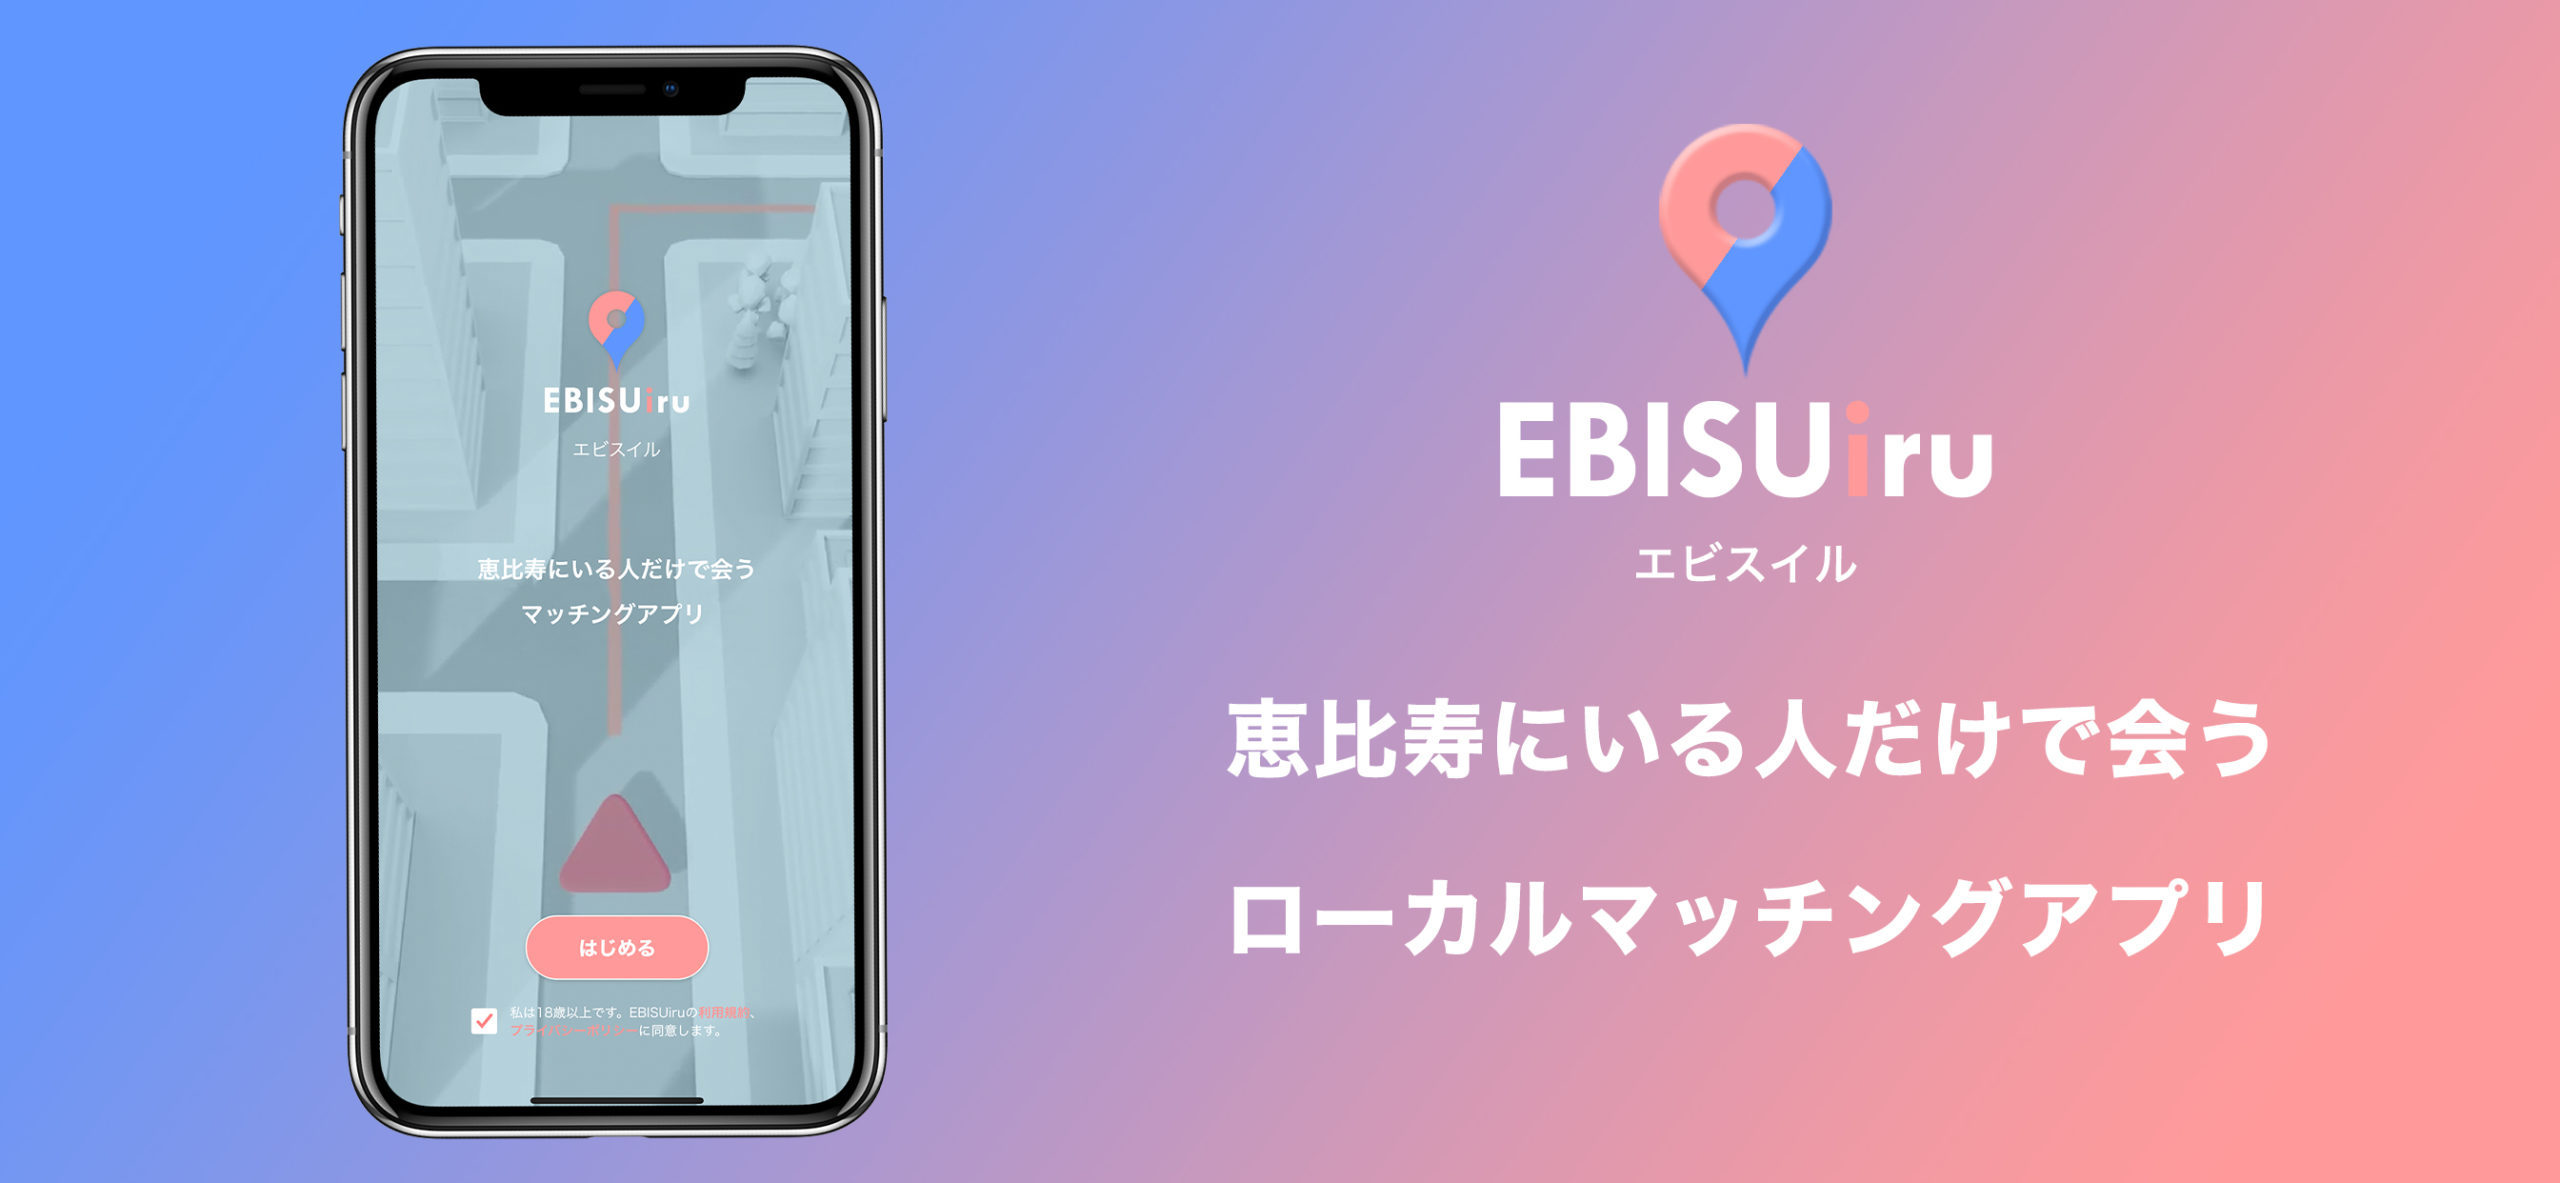 ローカルマッチングアプリ 「EBISUiri(エビスイル)」iOS版リリースのお知らせ。